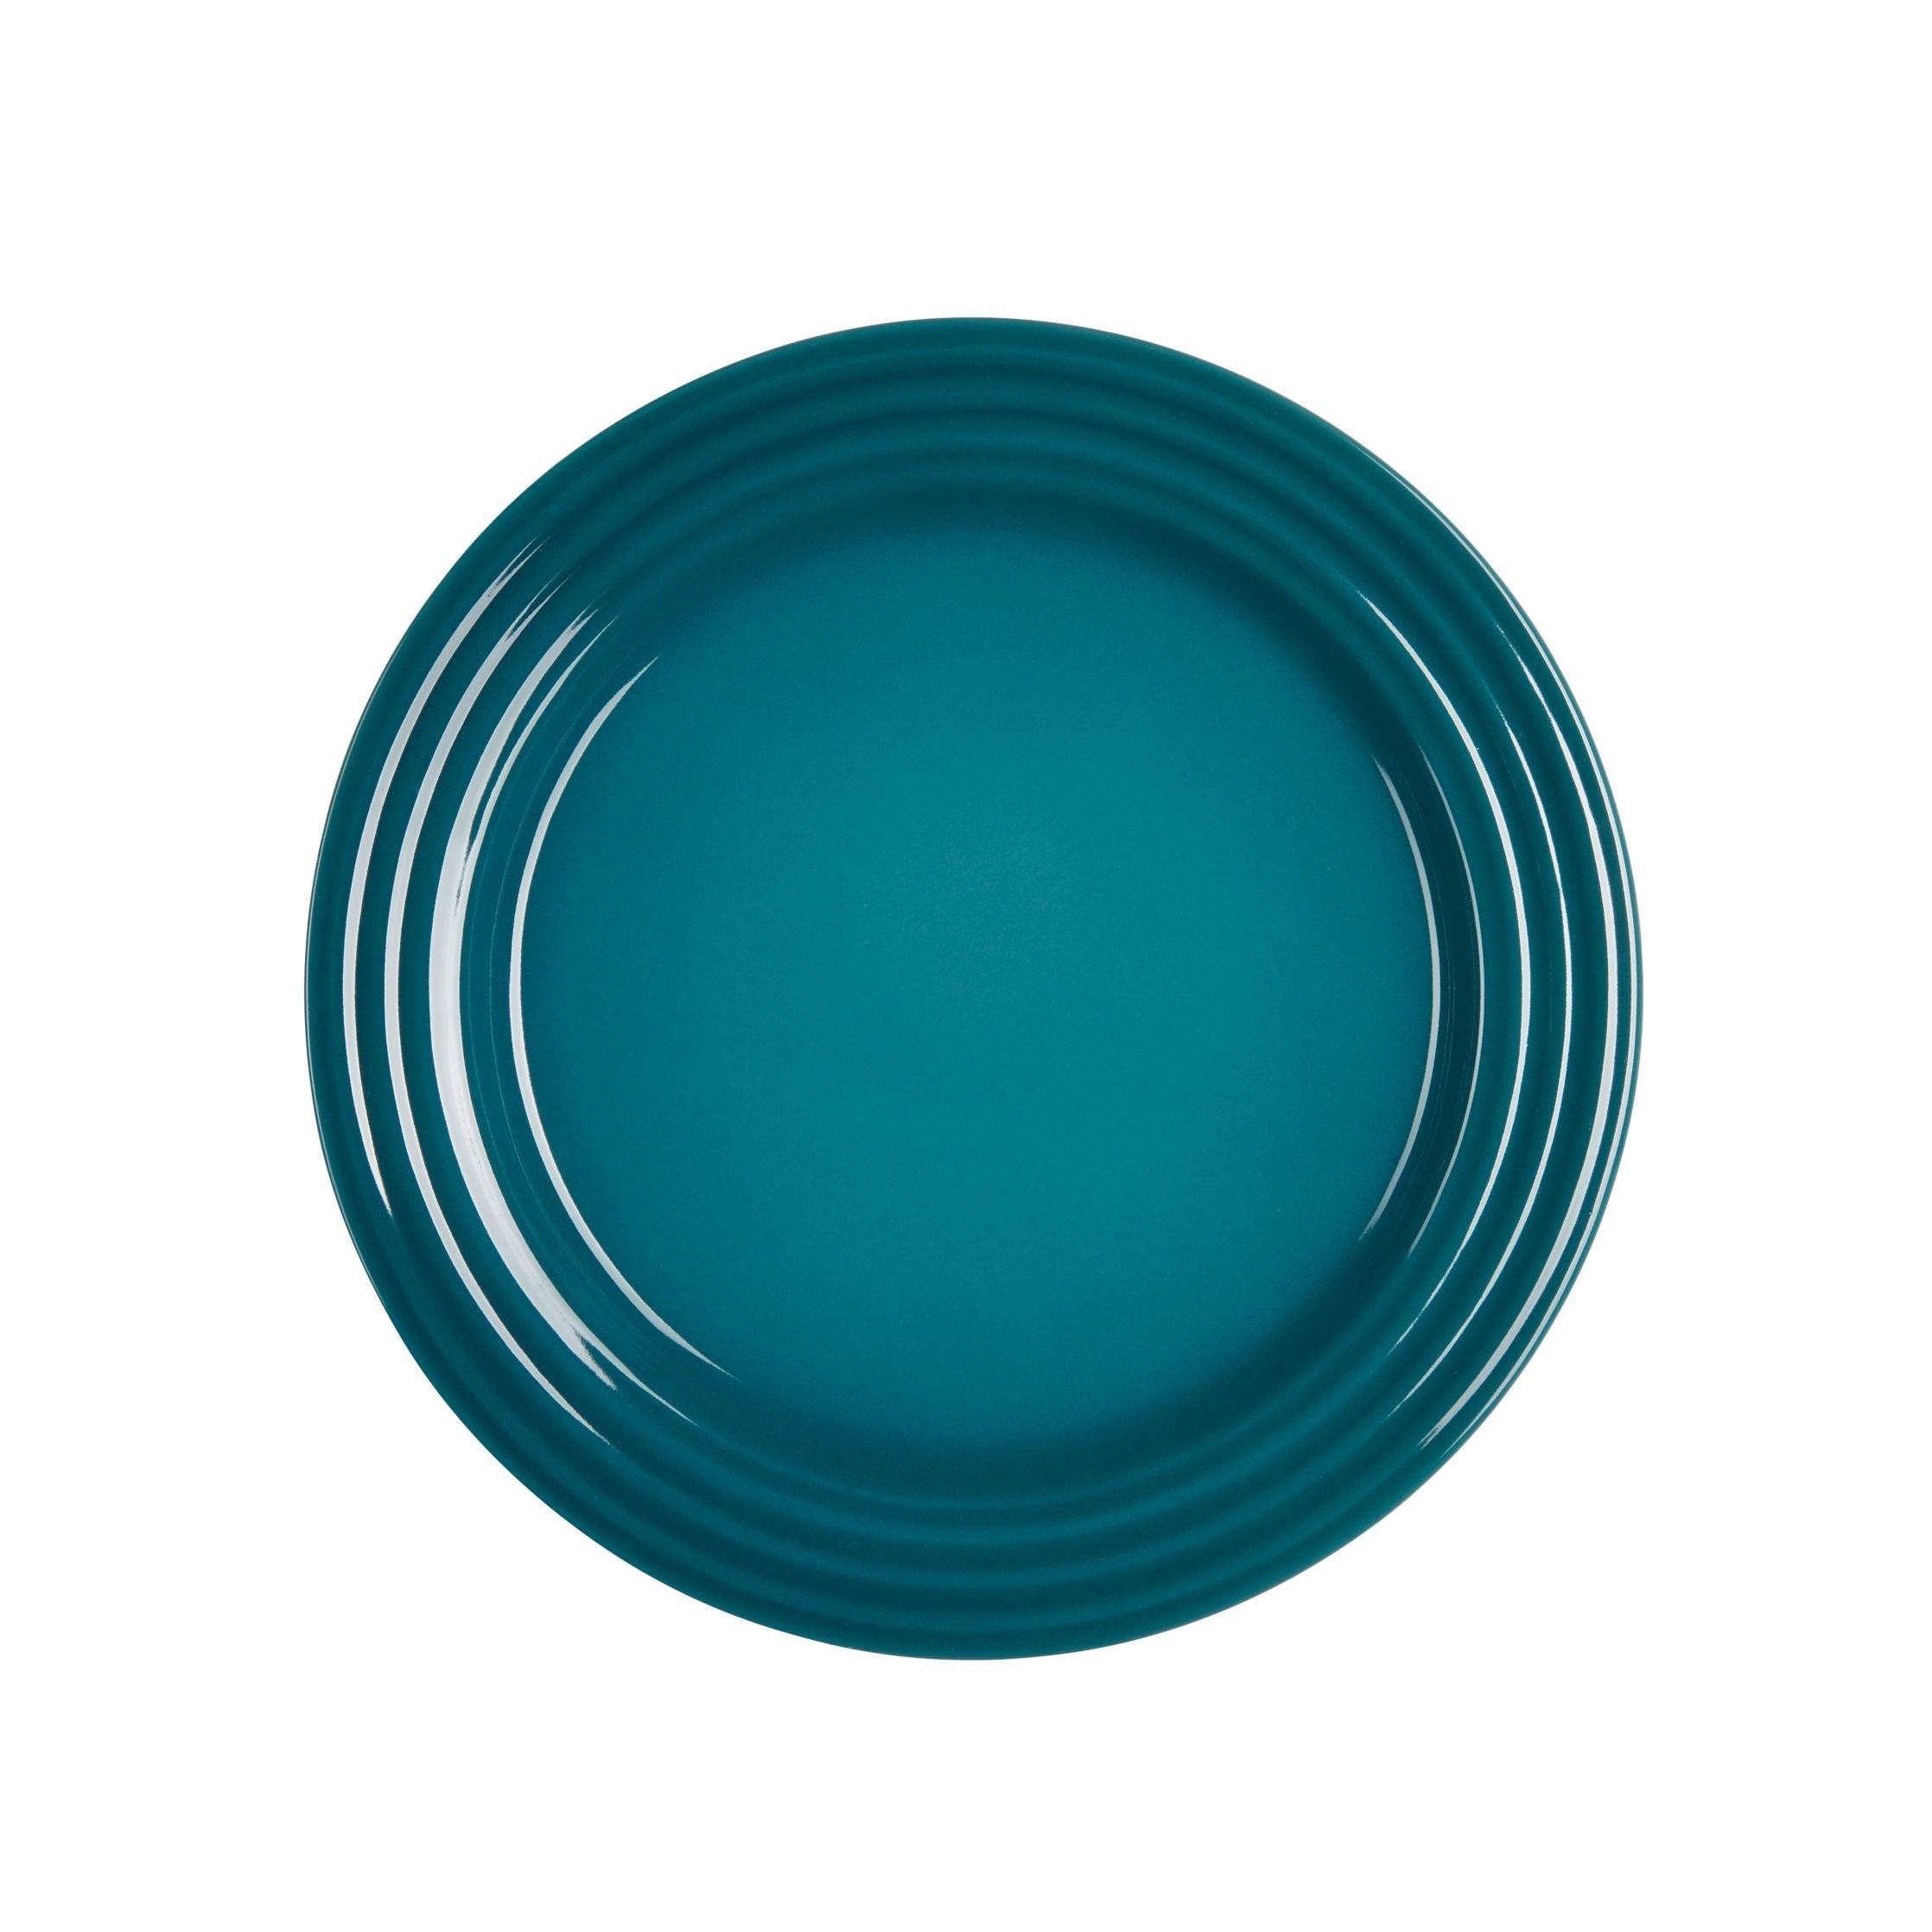 Le plato de desayuno de le Creuset Signature 22 cm, verde azulado profundo